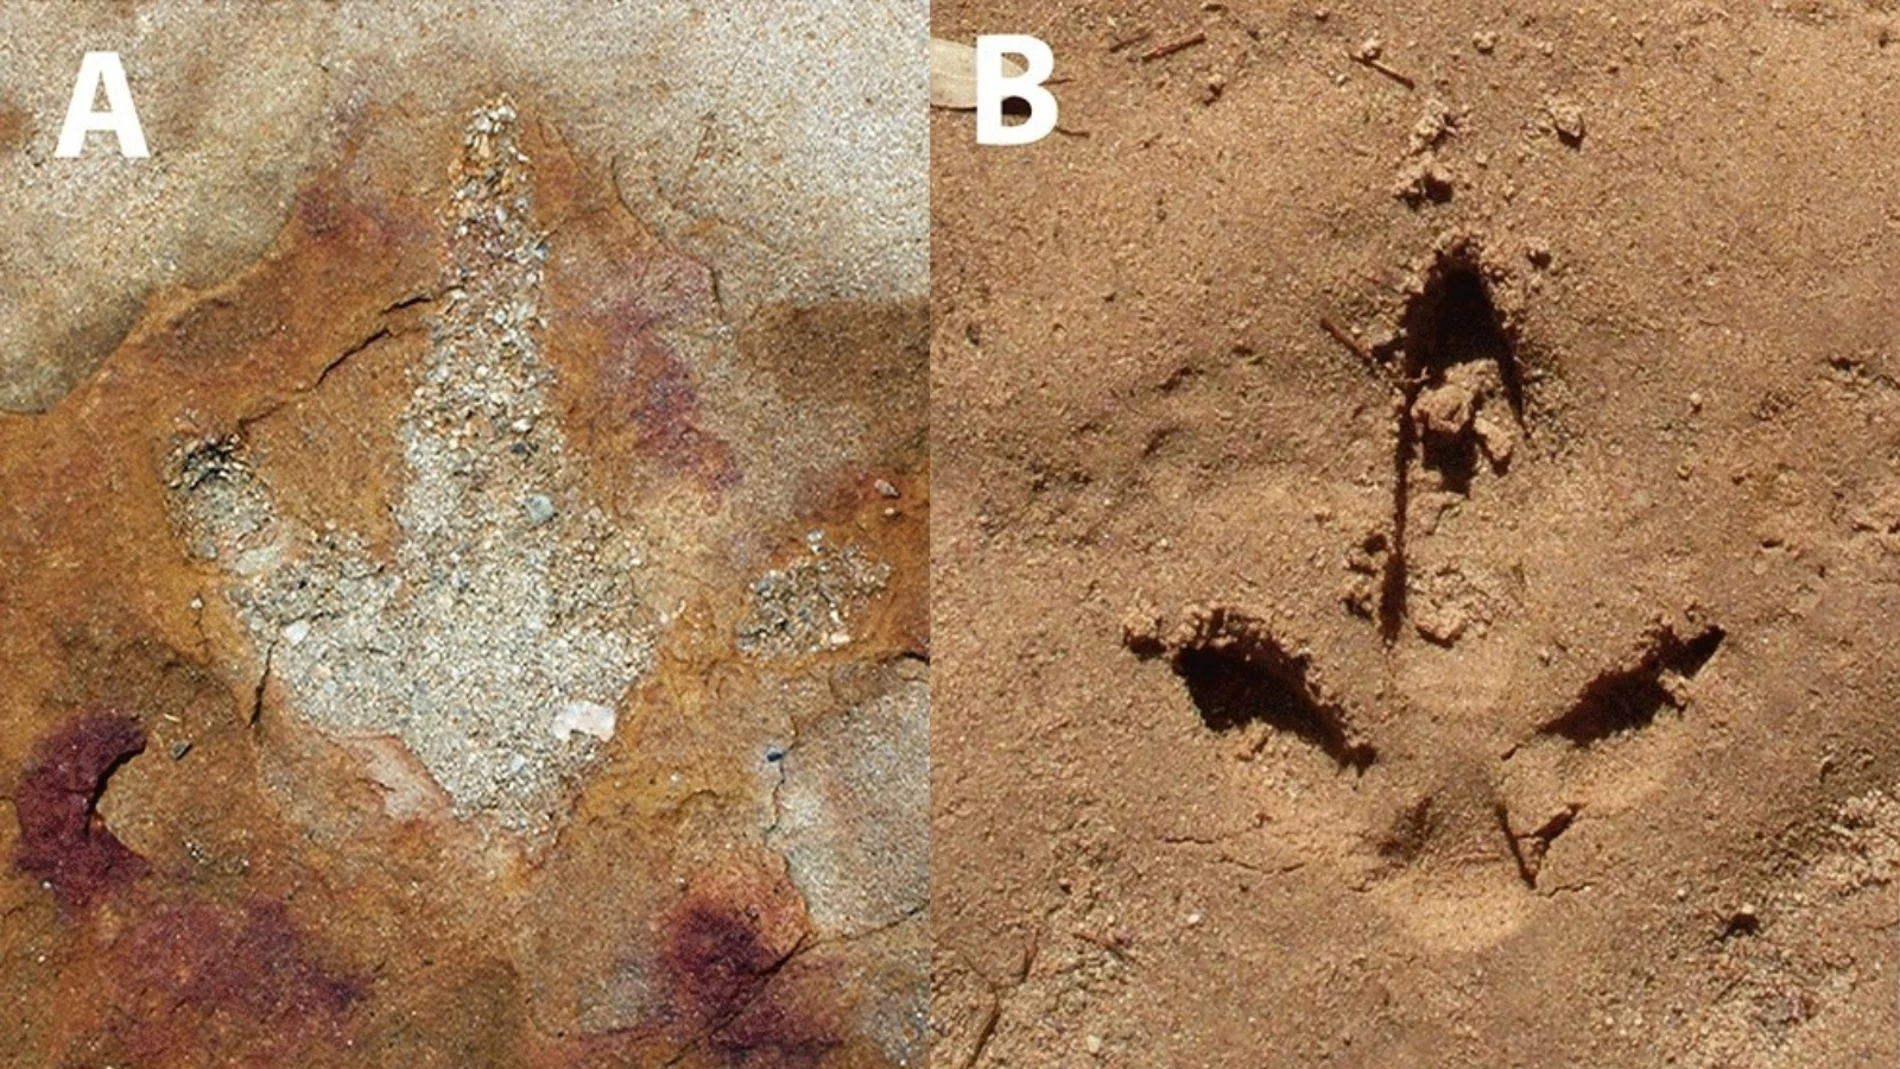 Descubren huellas de dinosaurios junto a misteriosos símbolos en Brasil